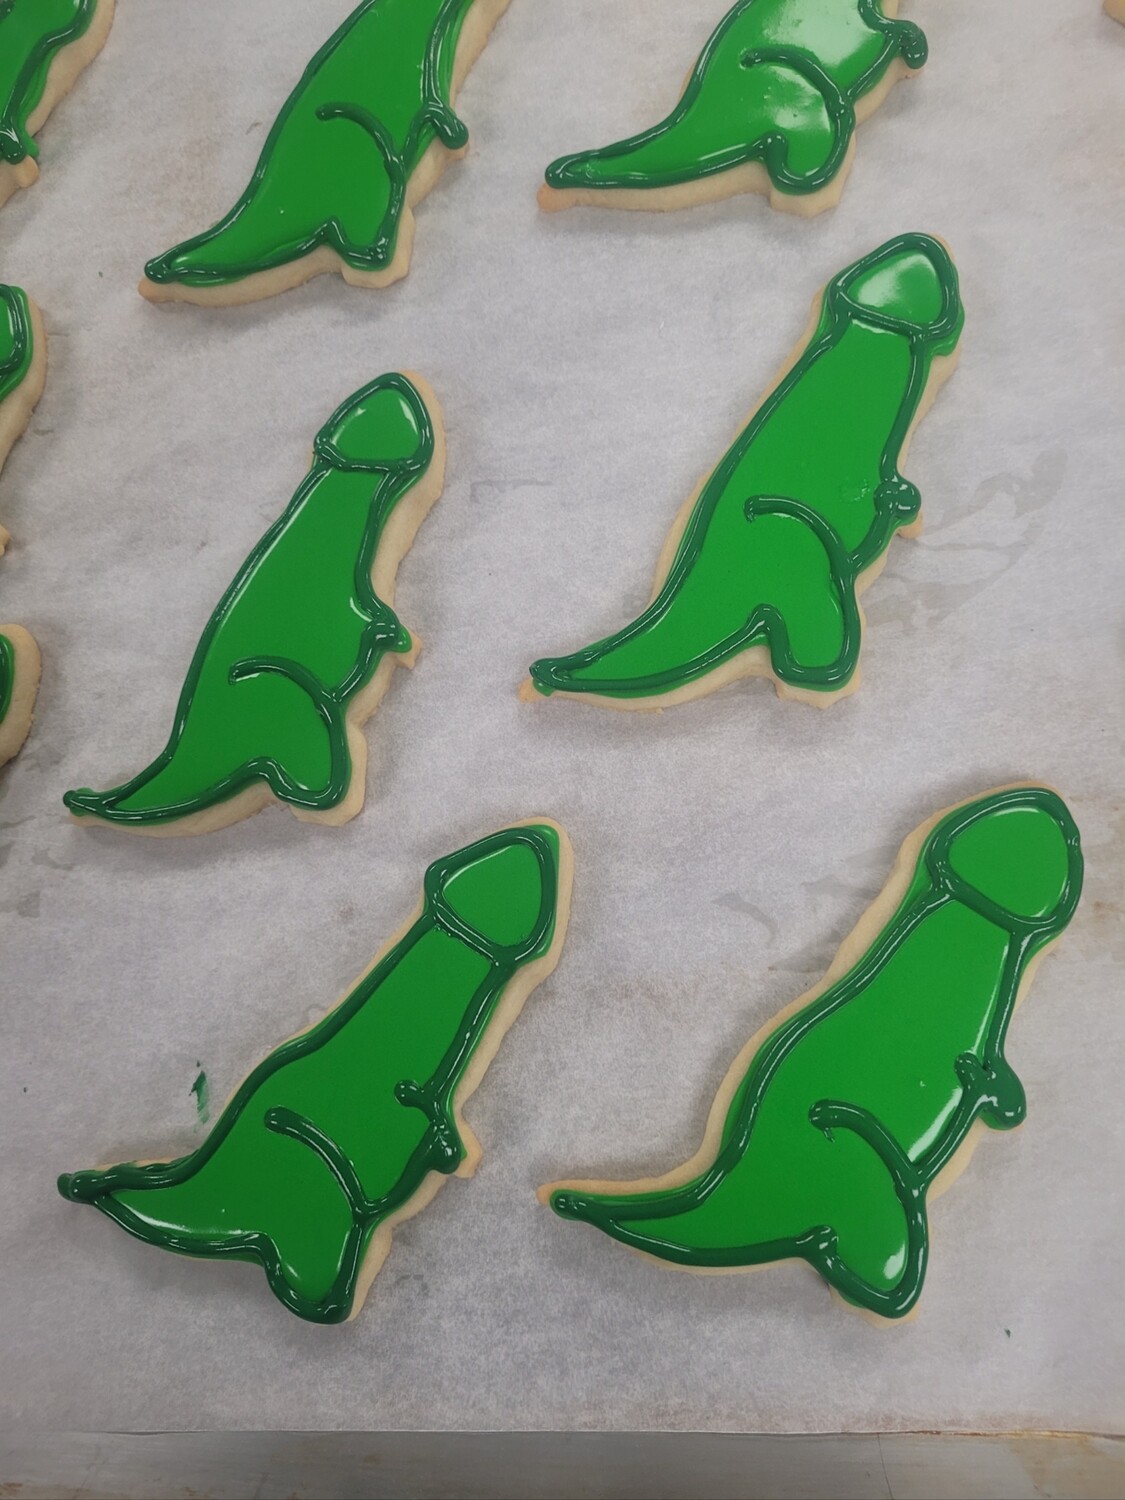 P-Rex cookies